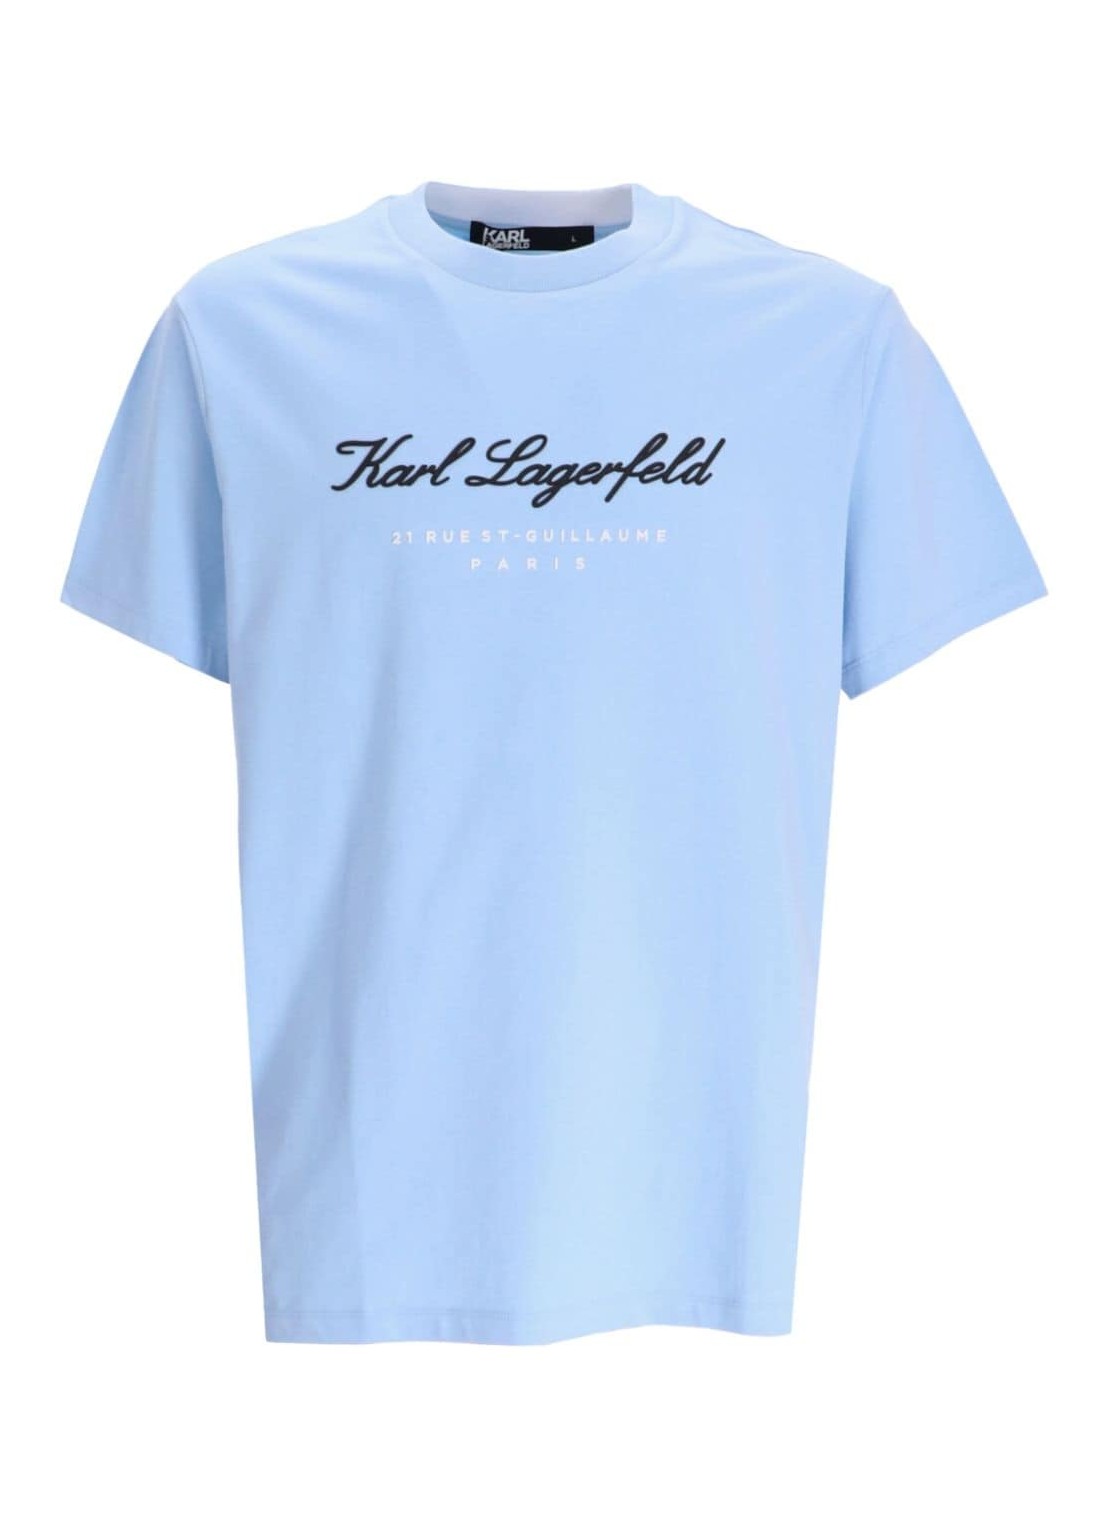 Camiseta karl lagerfeld t-shirt man t-shirt crewneck 755403541221 620 talla XXL
 